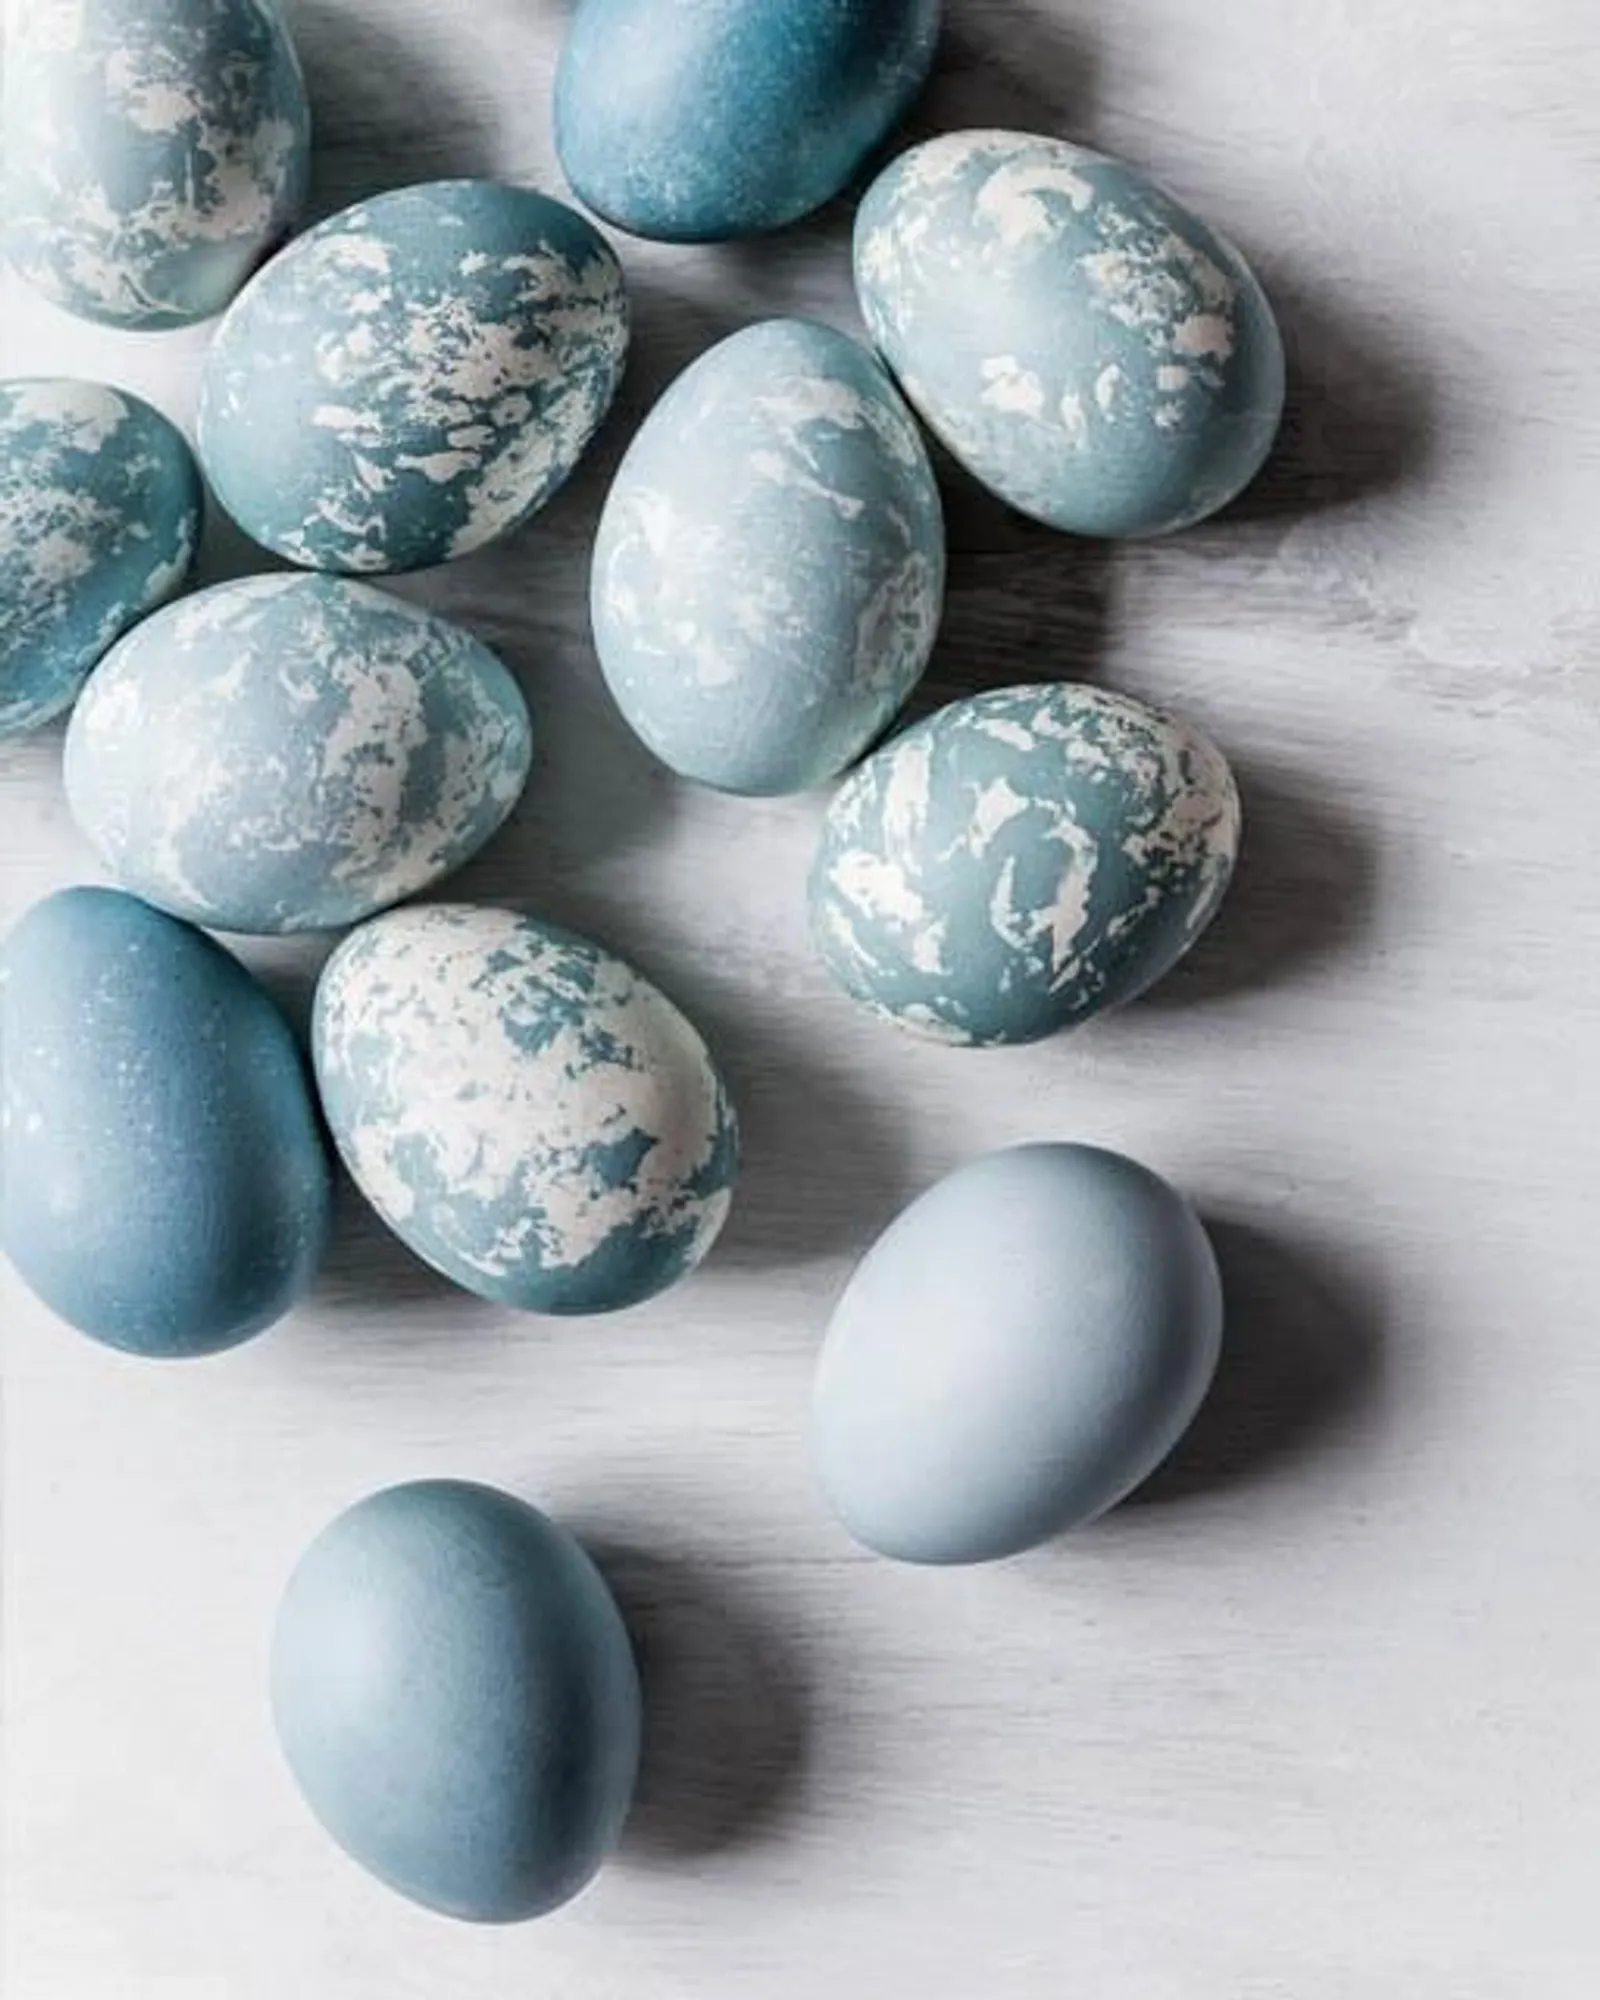 Sambut Paskah, Ini Inspirasi 10 Kreasi Telur Paskah Unik